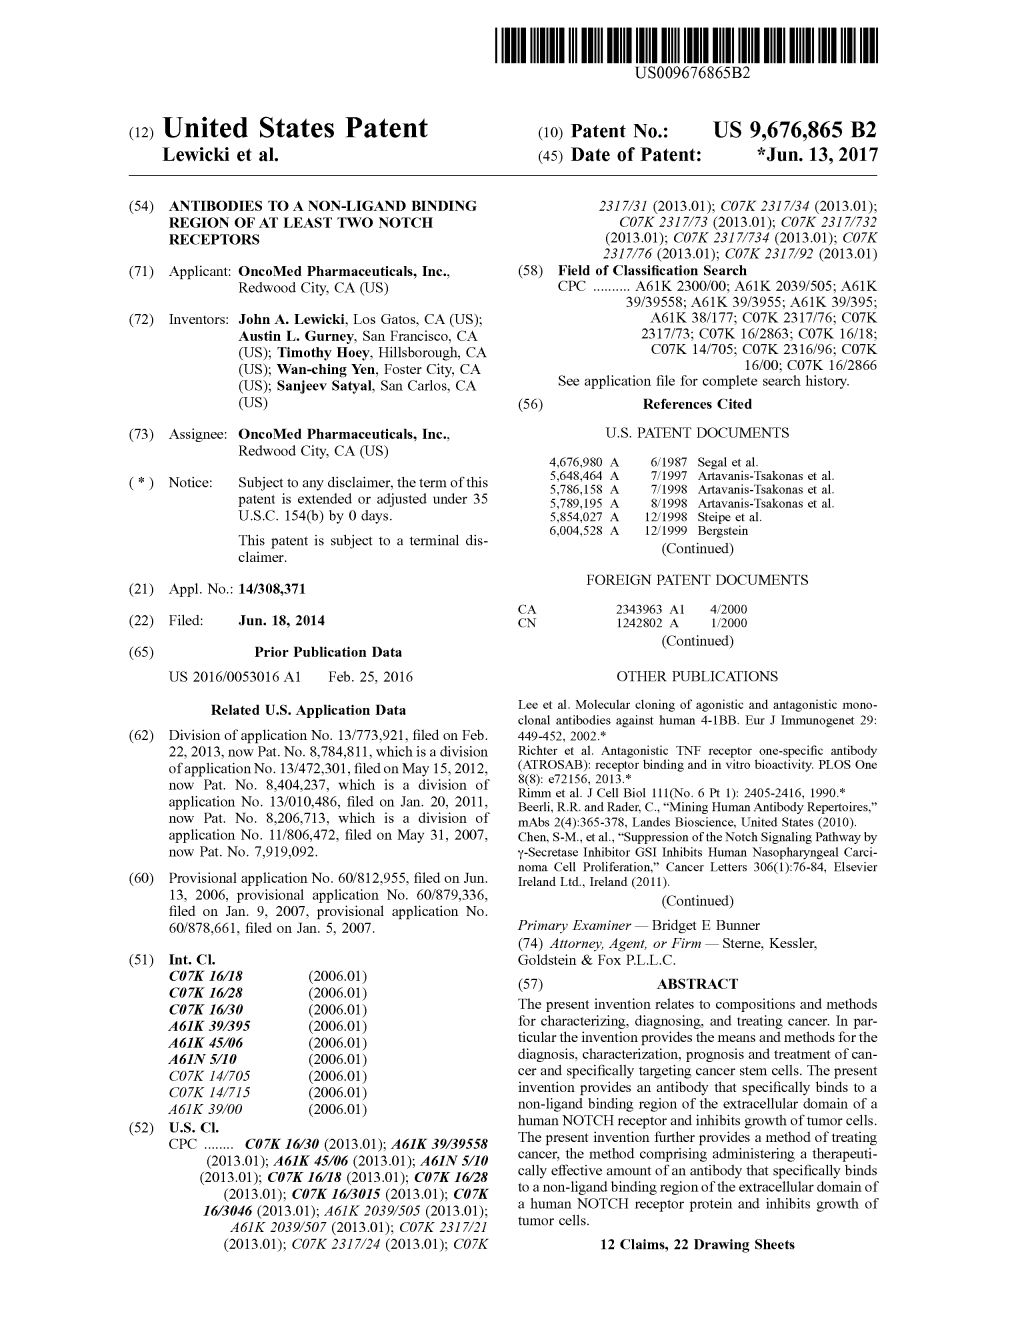 (12) United States Patent (10) Patent No.: US 9,676,865 B2 Lewicki Et Al